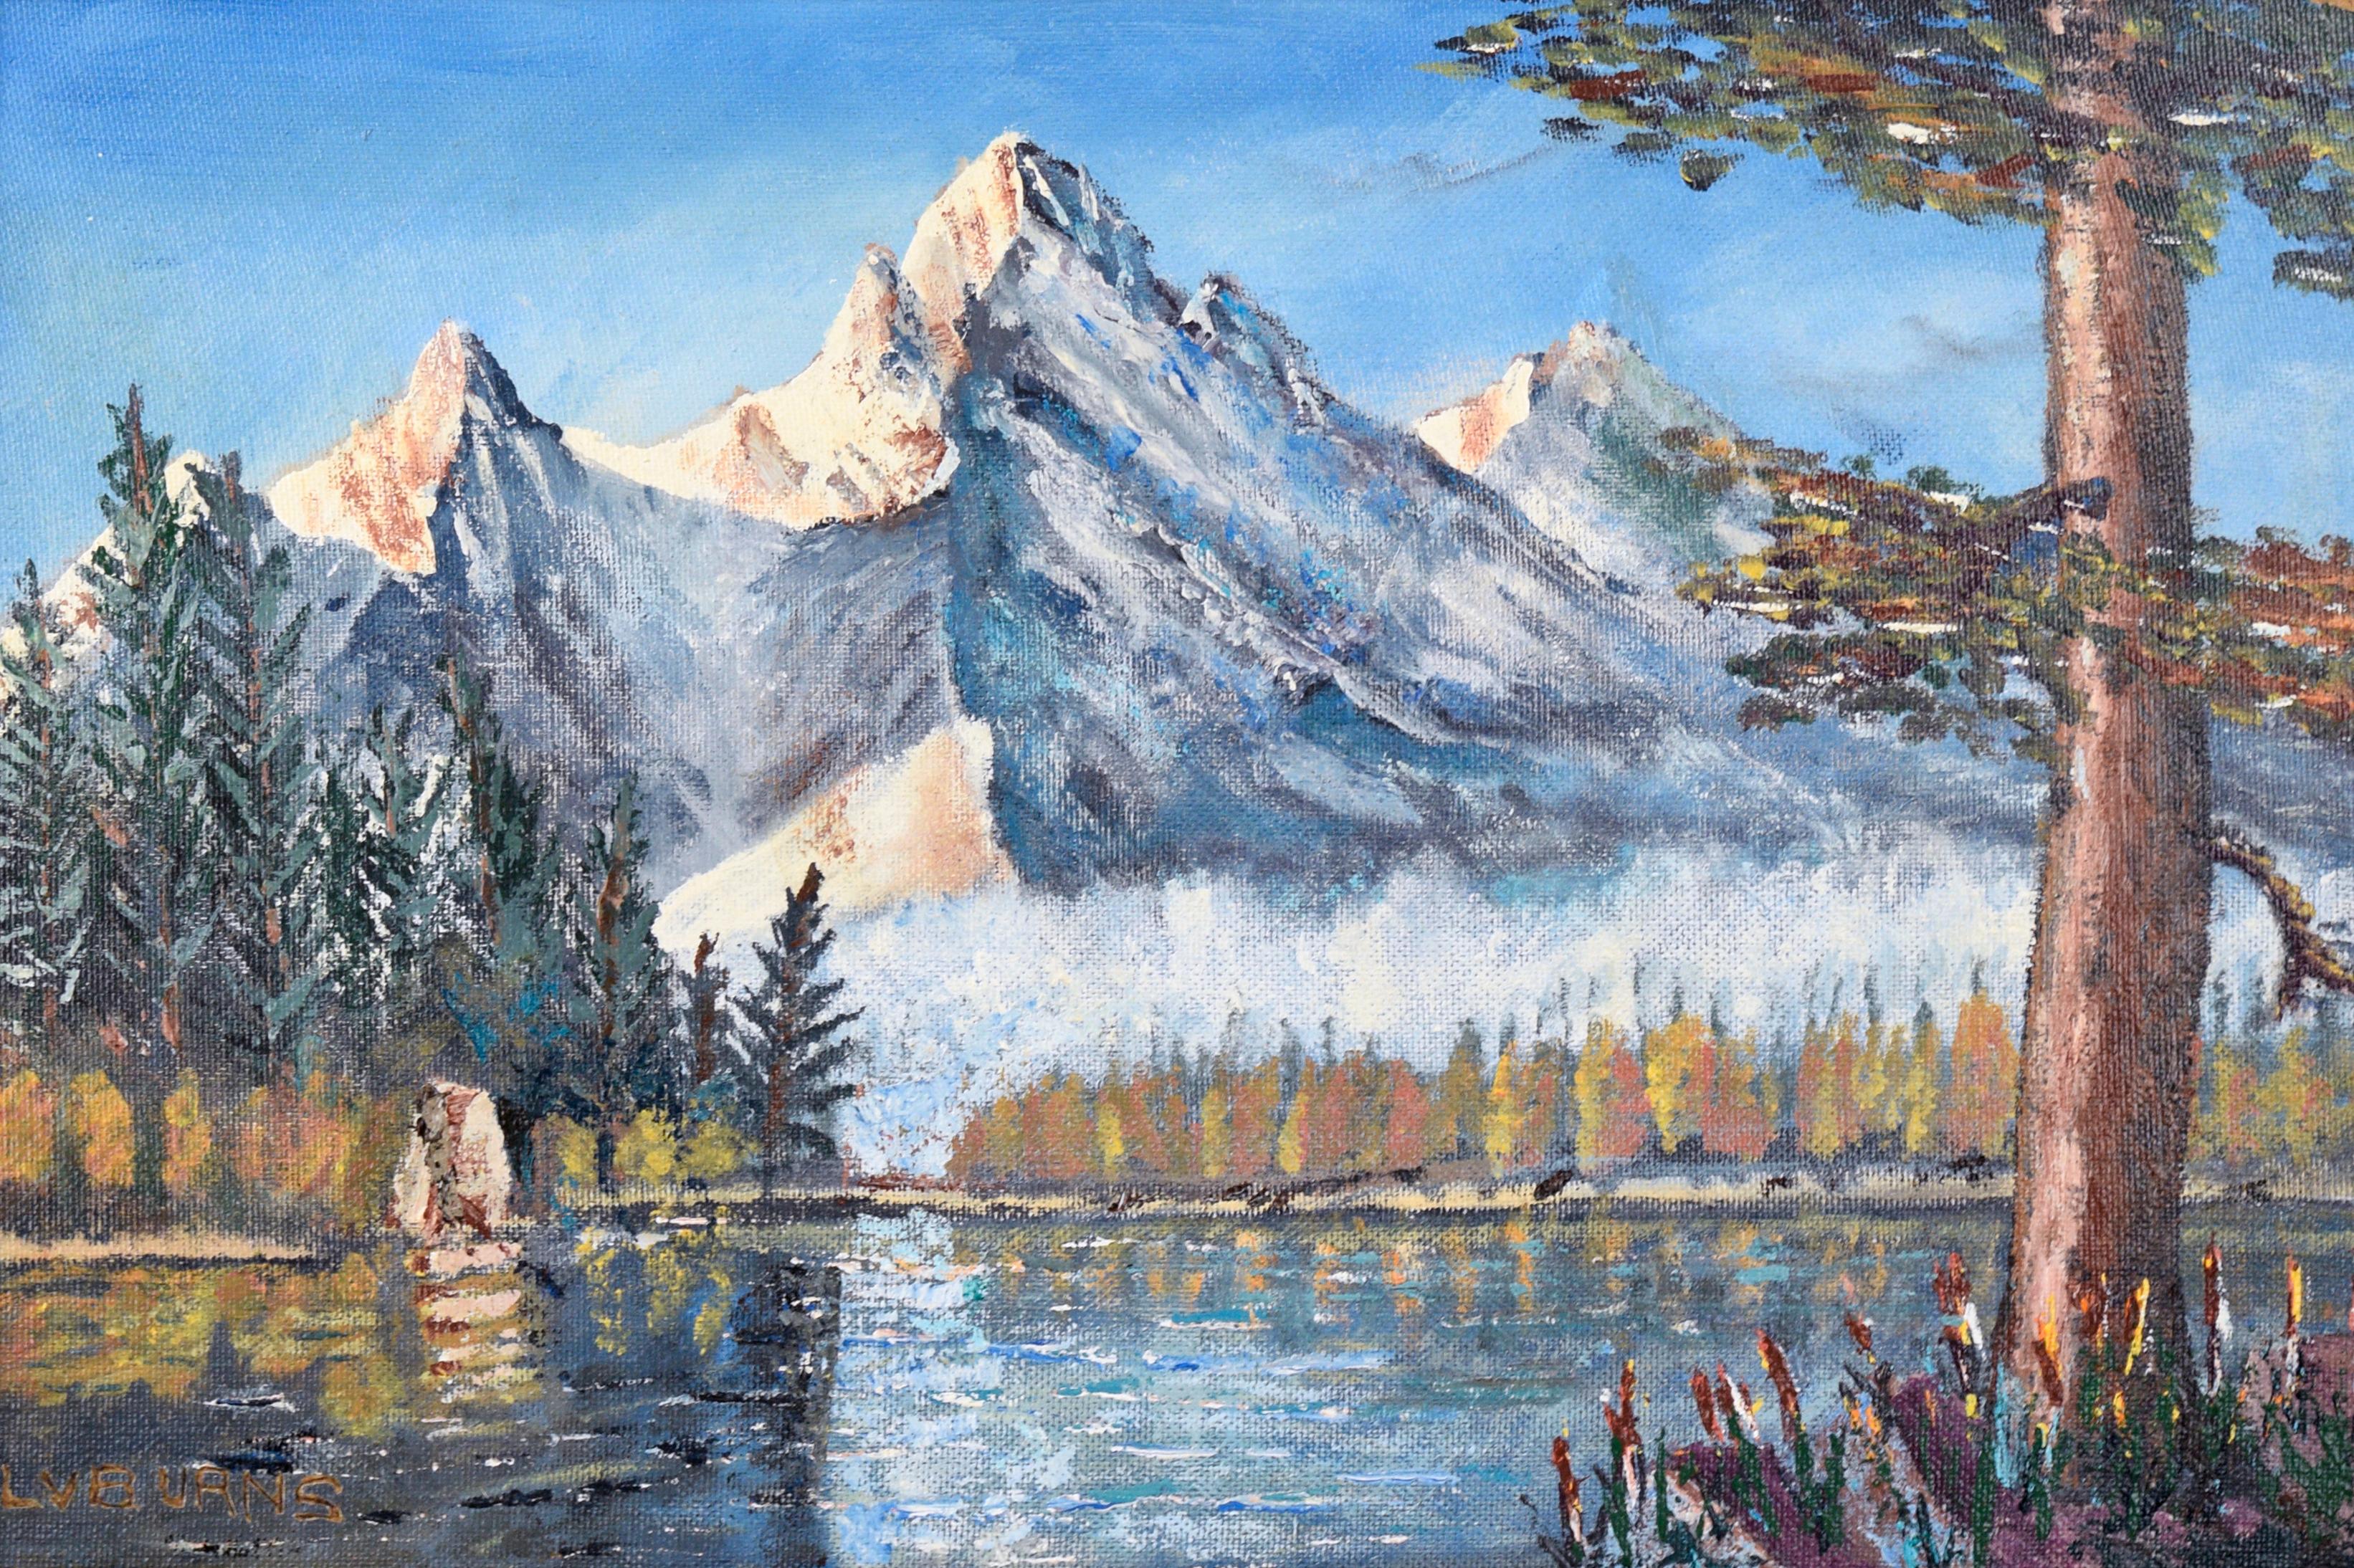 Sierra Mountain Lake Landscape von L.V. Verbrennungen – Painting von L. V. Burns